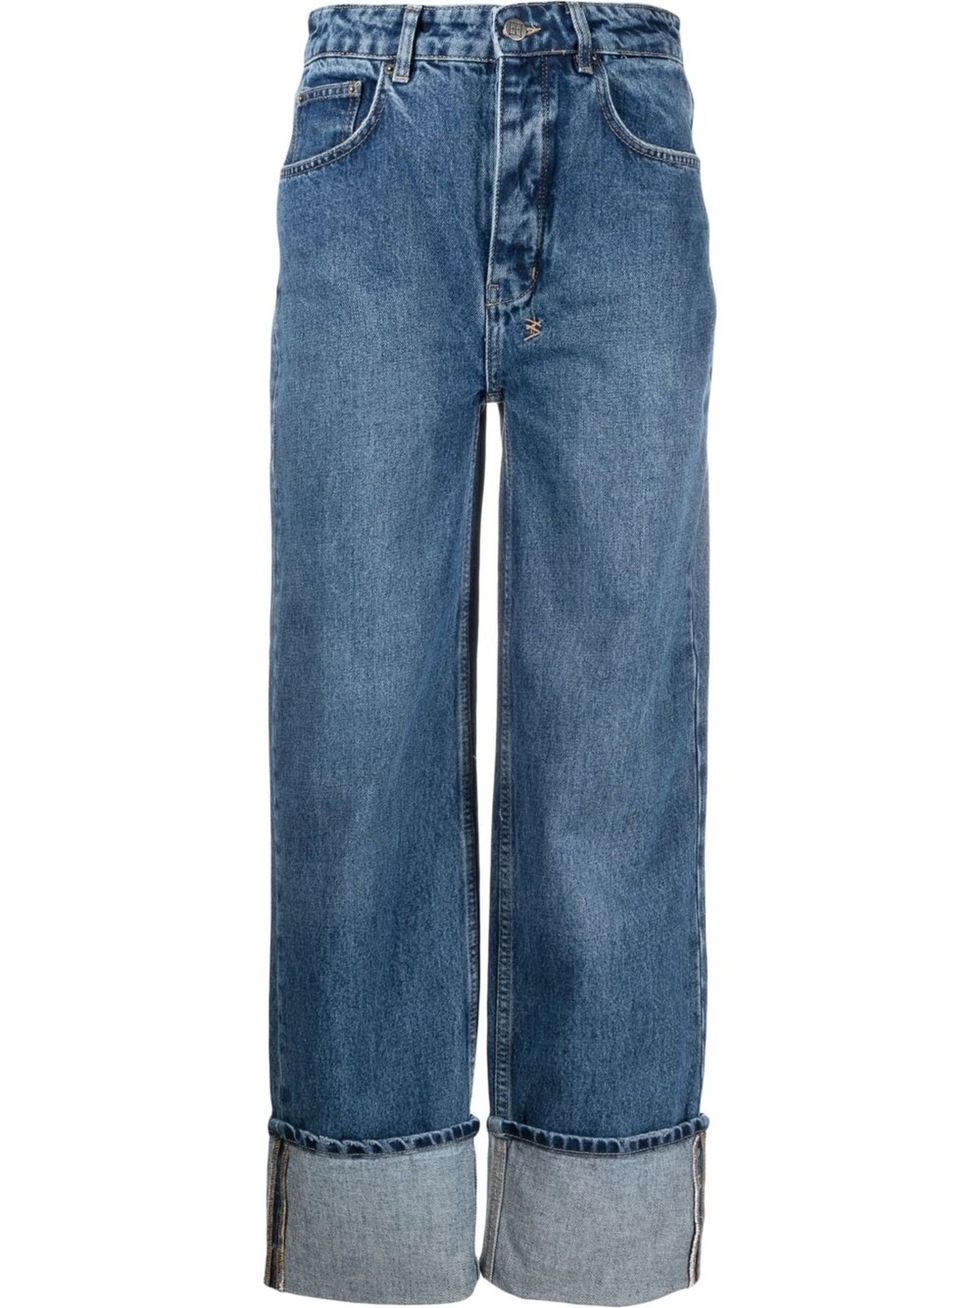 Jeans rectos con dobladillo